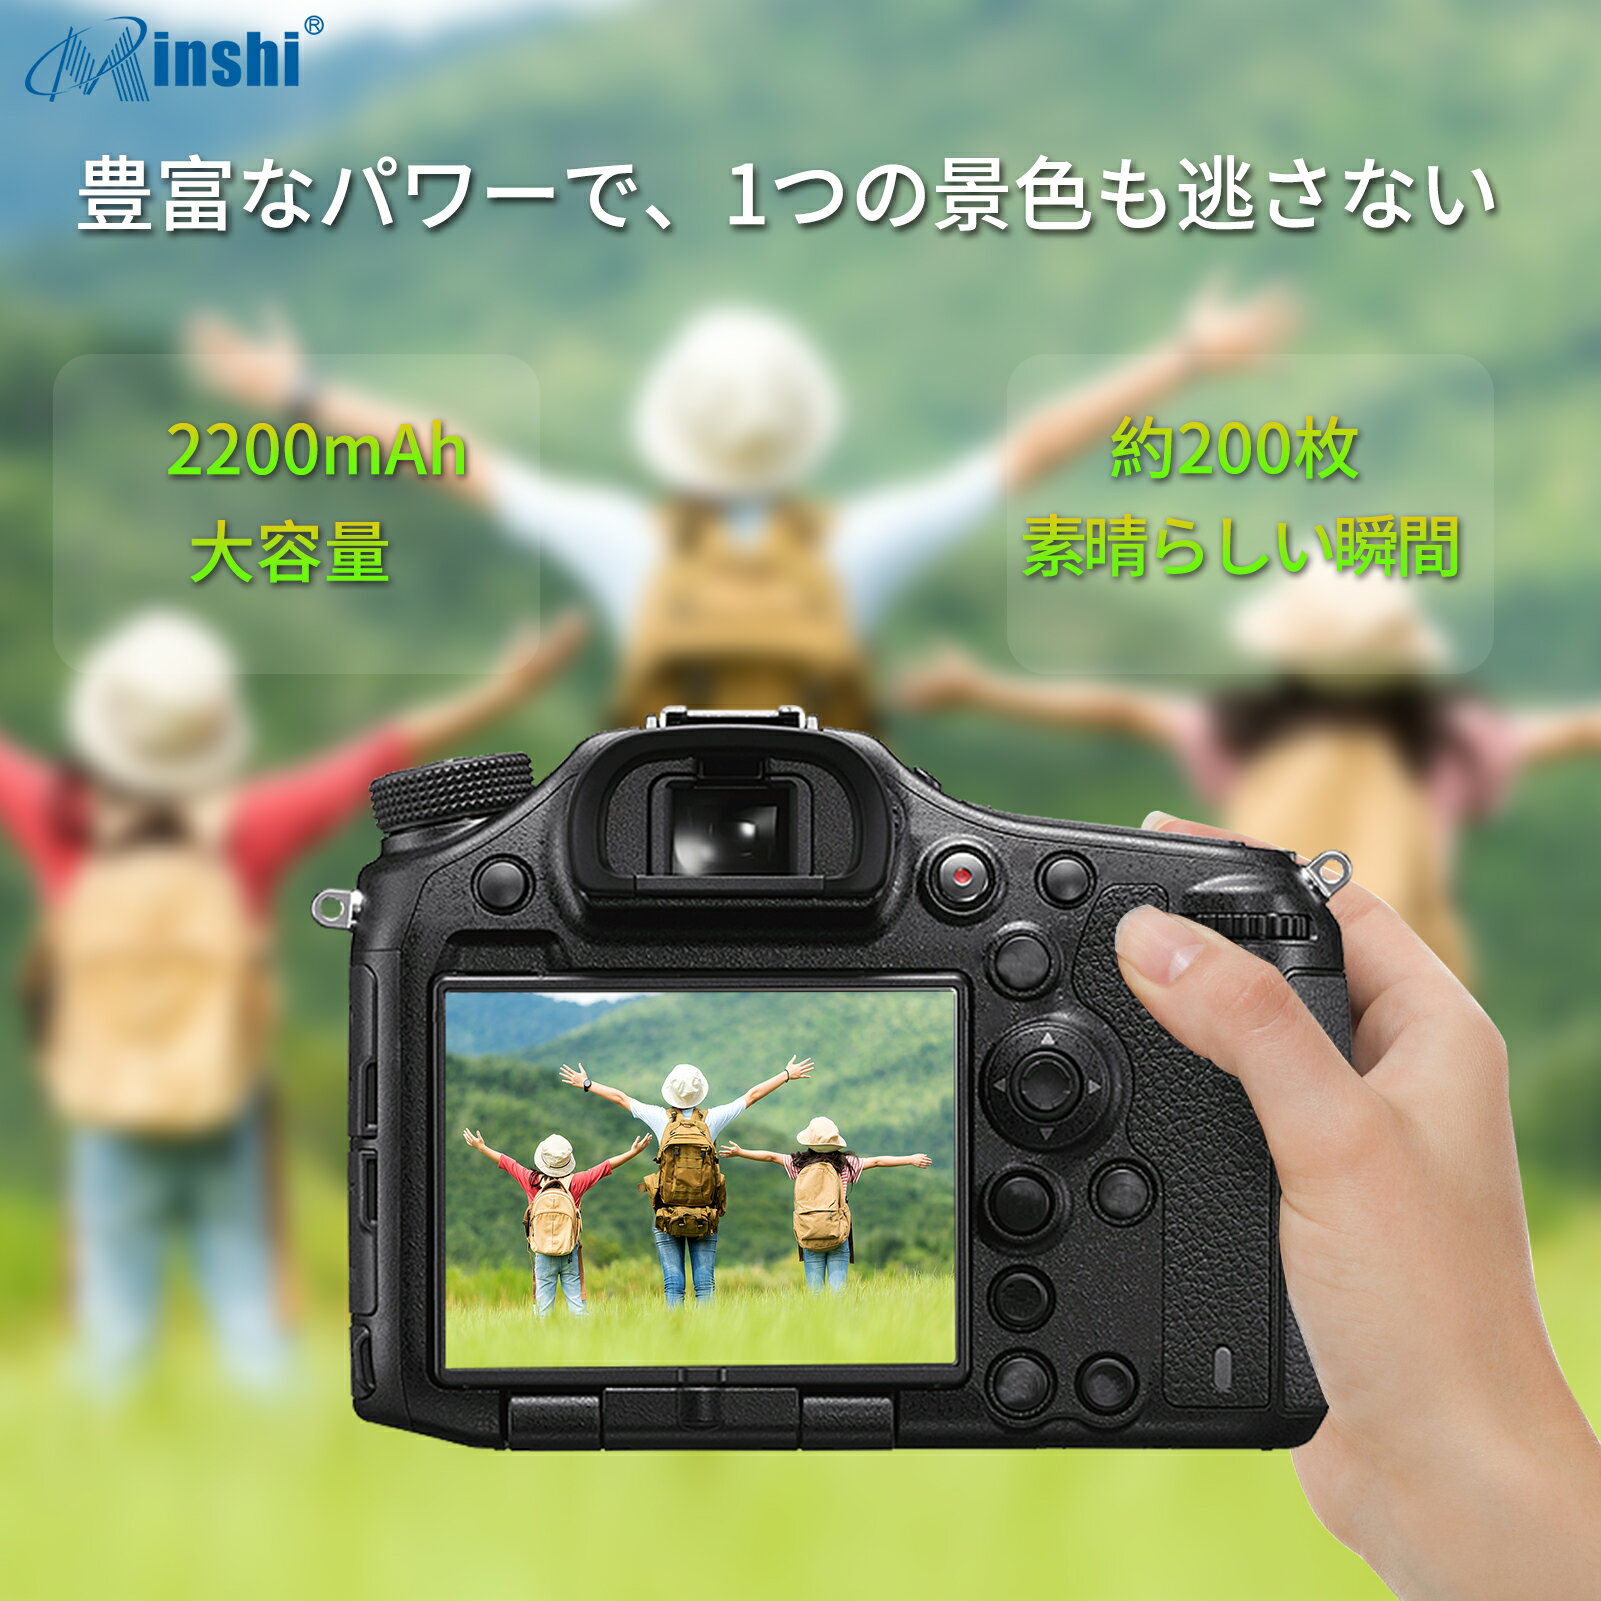 minshi 新品 NIKON D70 互換バ...の紹介画像3